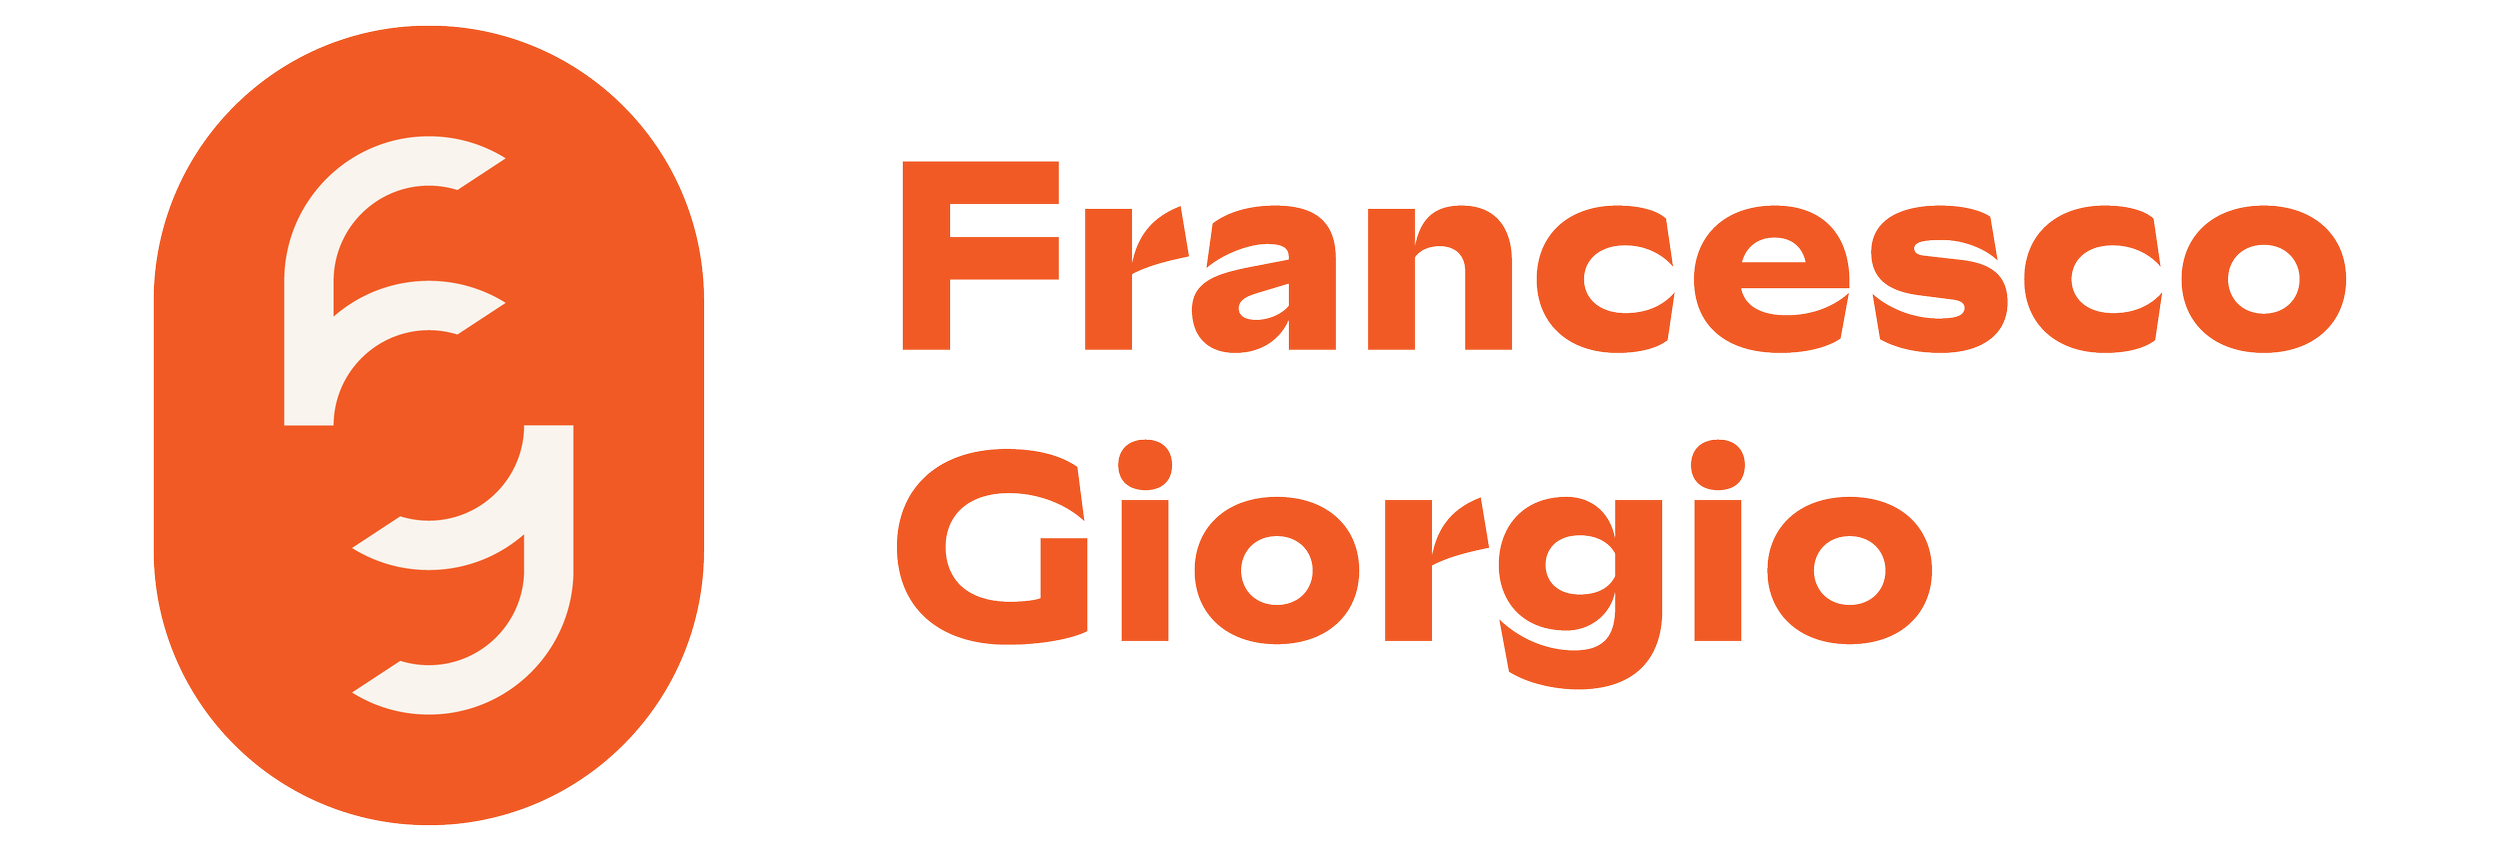 Francesco Giorgio 